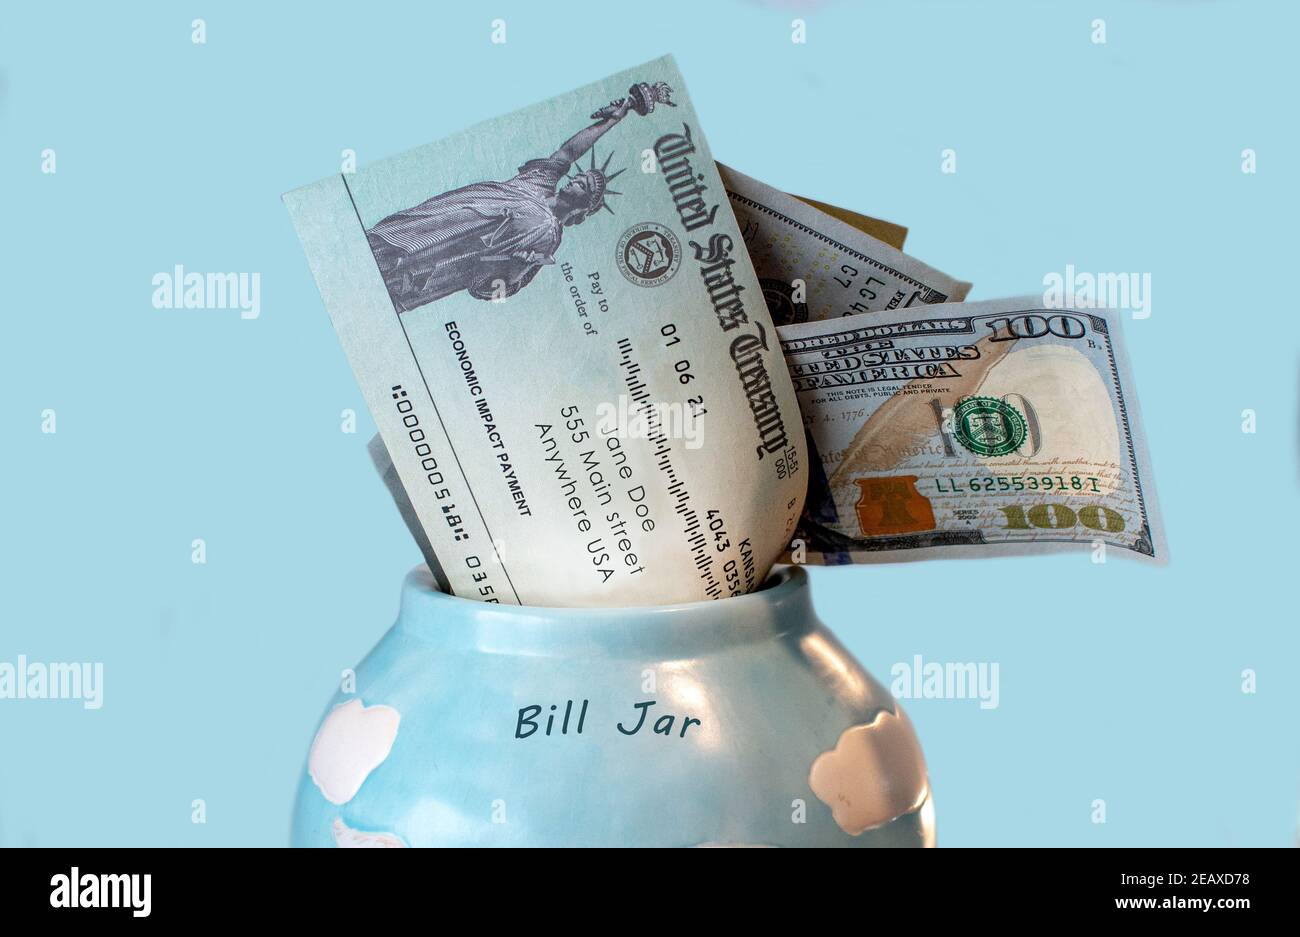 Ein Bill jar hält Geld und eine wirtschaftliche Wirkung Zahlung, PR Stimulus Check, Hilfe für die amerikanischen Menschen kämpfen durch covid 19 Stockfoto